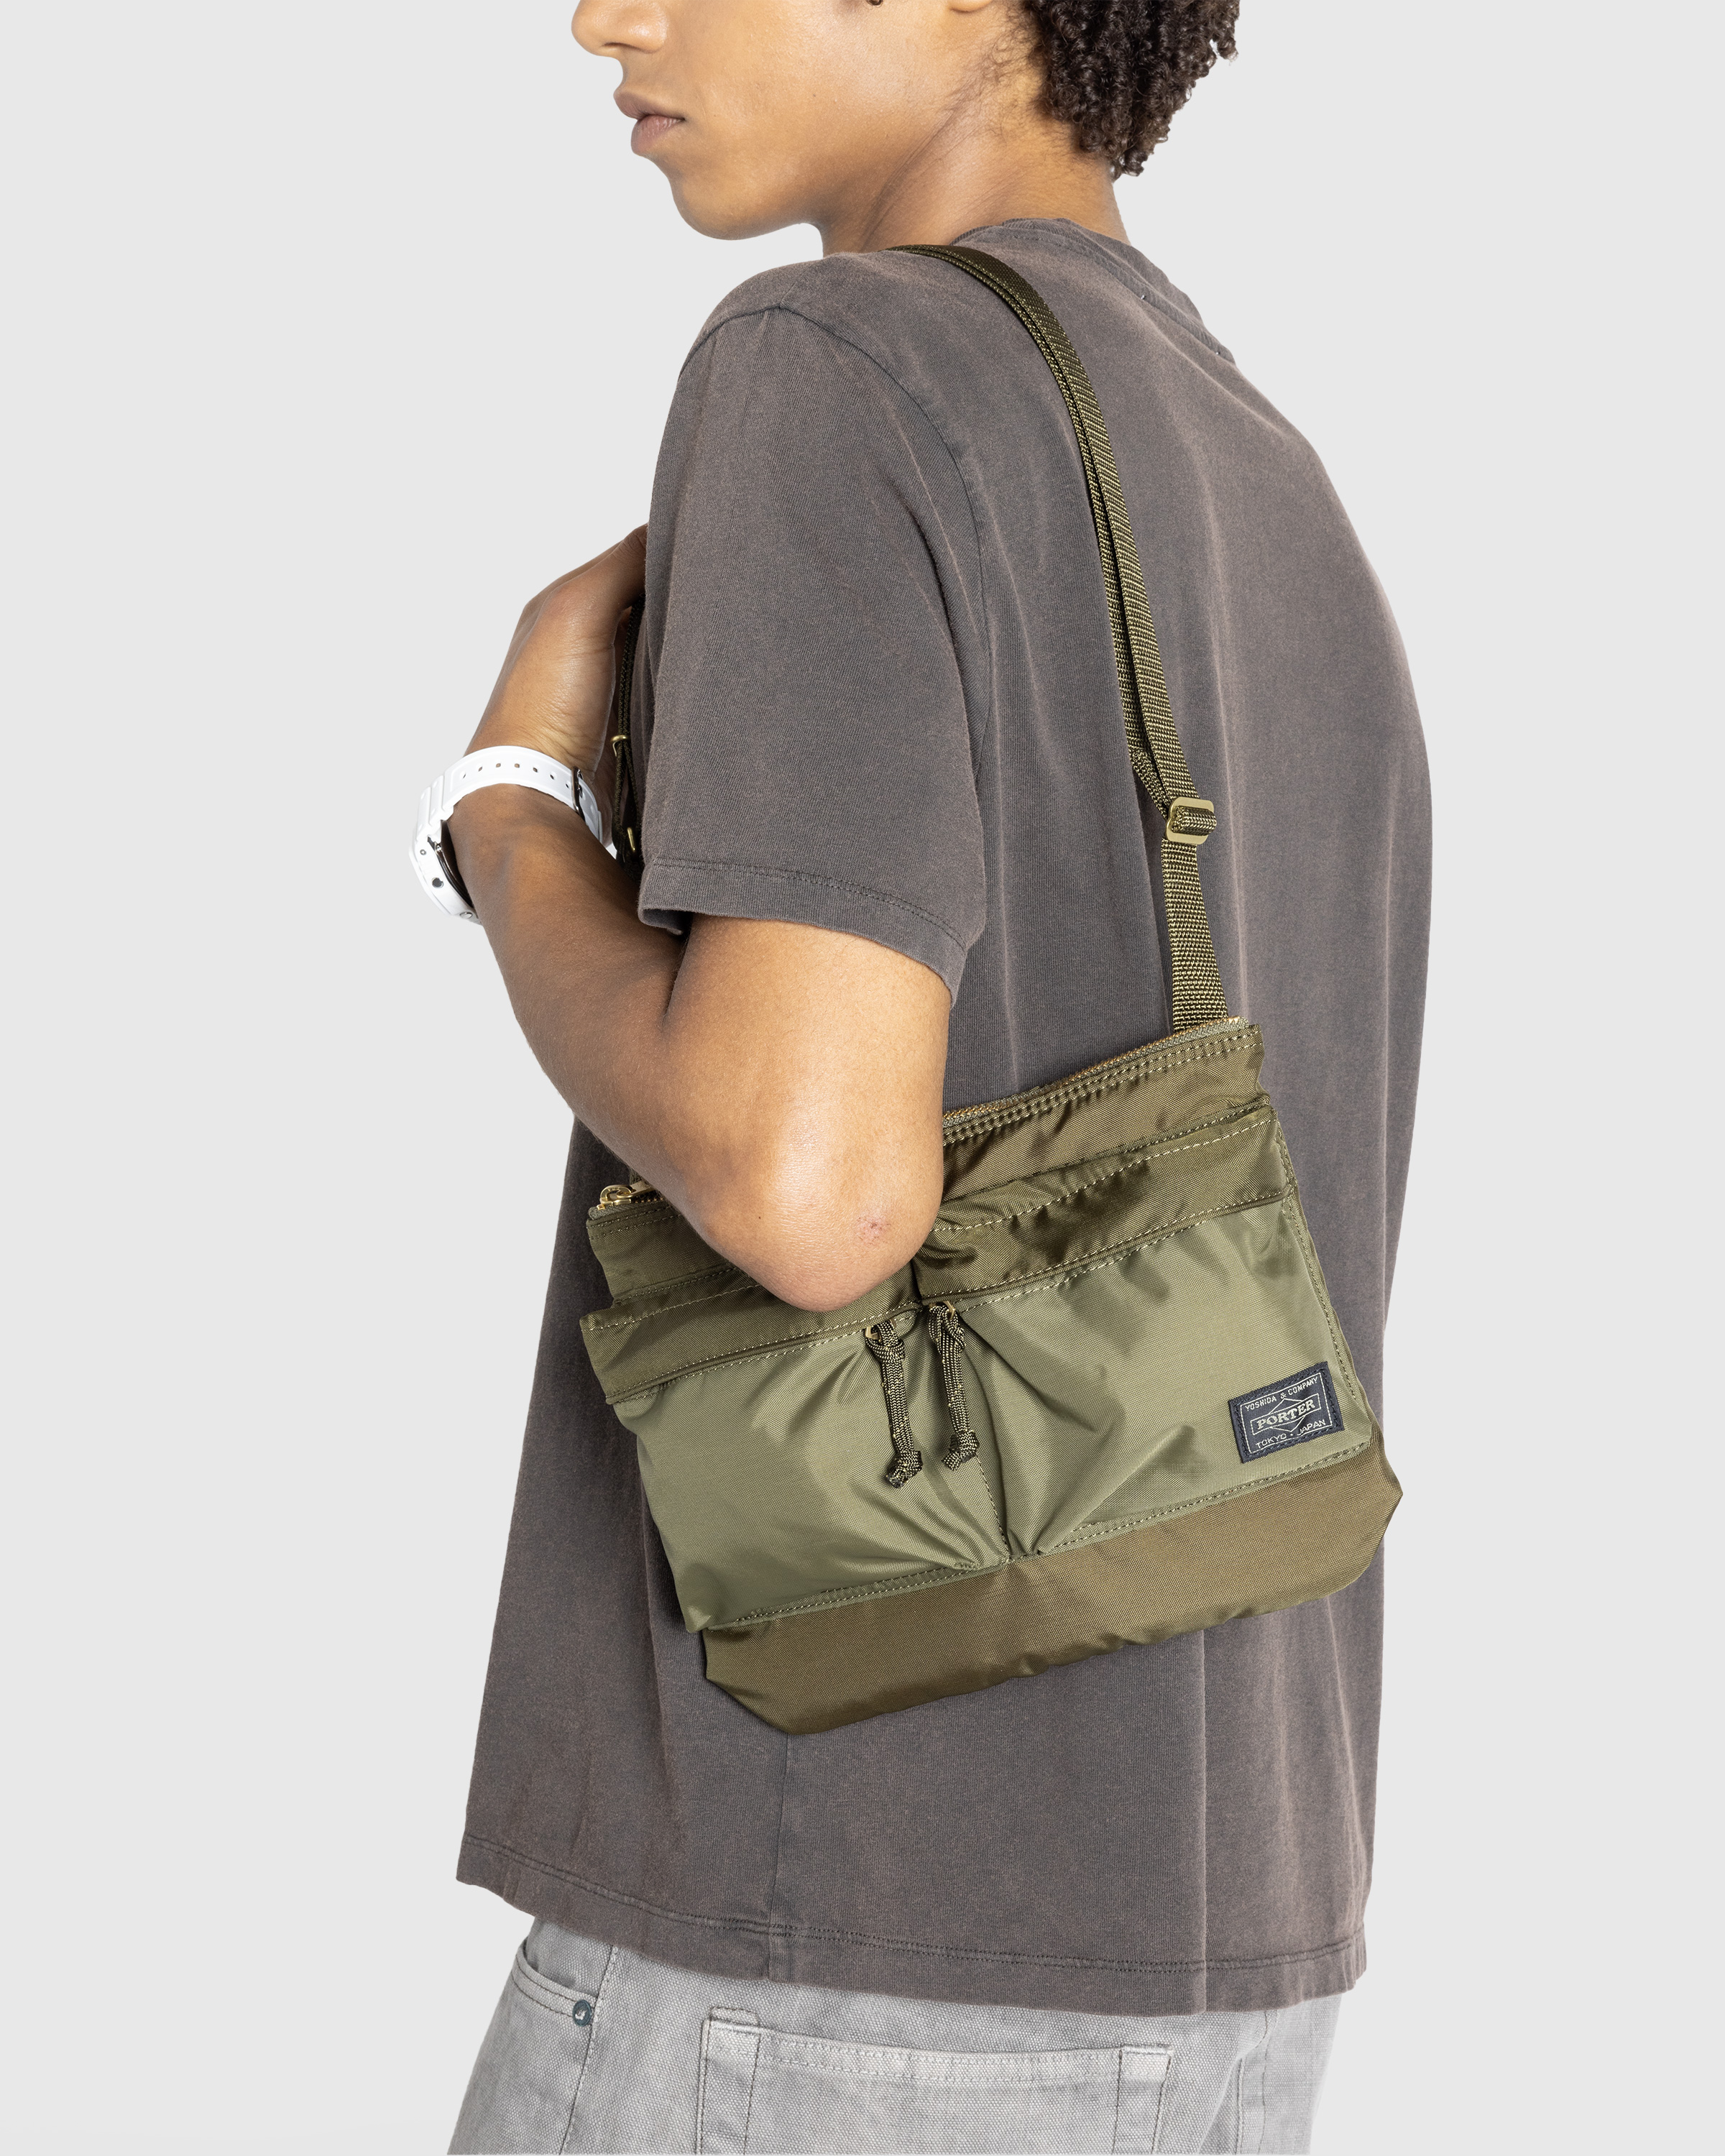 Porter-Yoshida & Co. – Force Shoulder Bag Olive Drab - Shoulder Bags - Green - Image 3